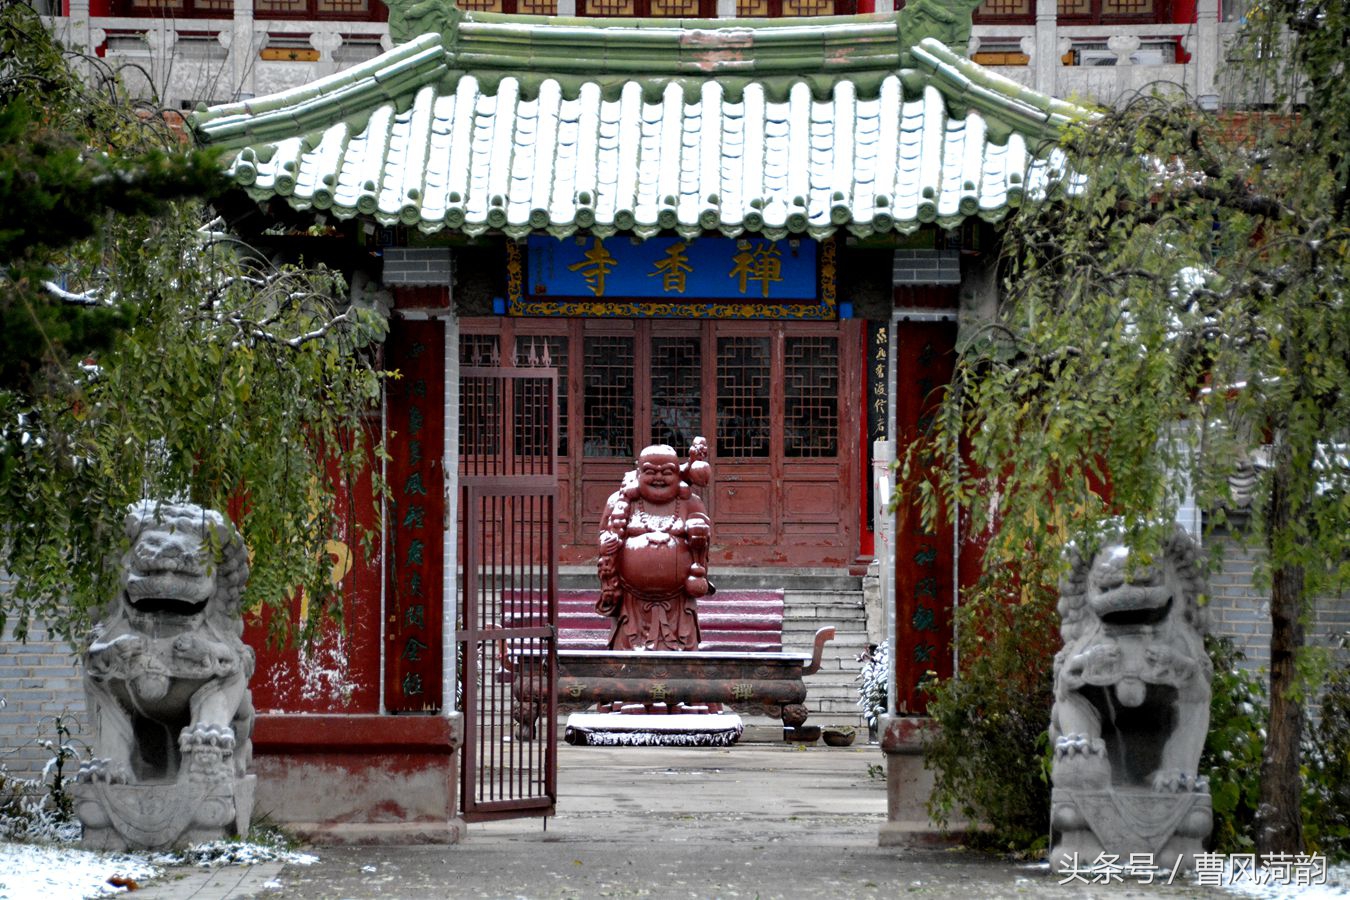 禅香寺,位于菏泽乃至世界最大的曹州牡丹园内,环境优美,每个花季